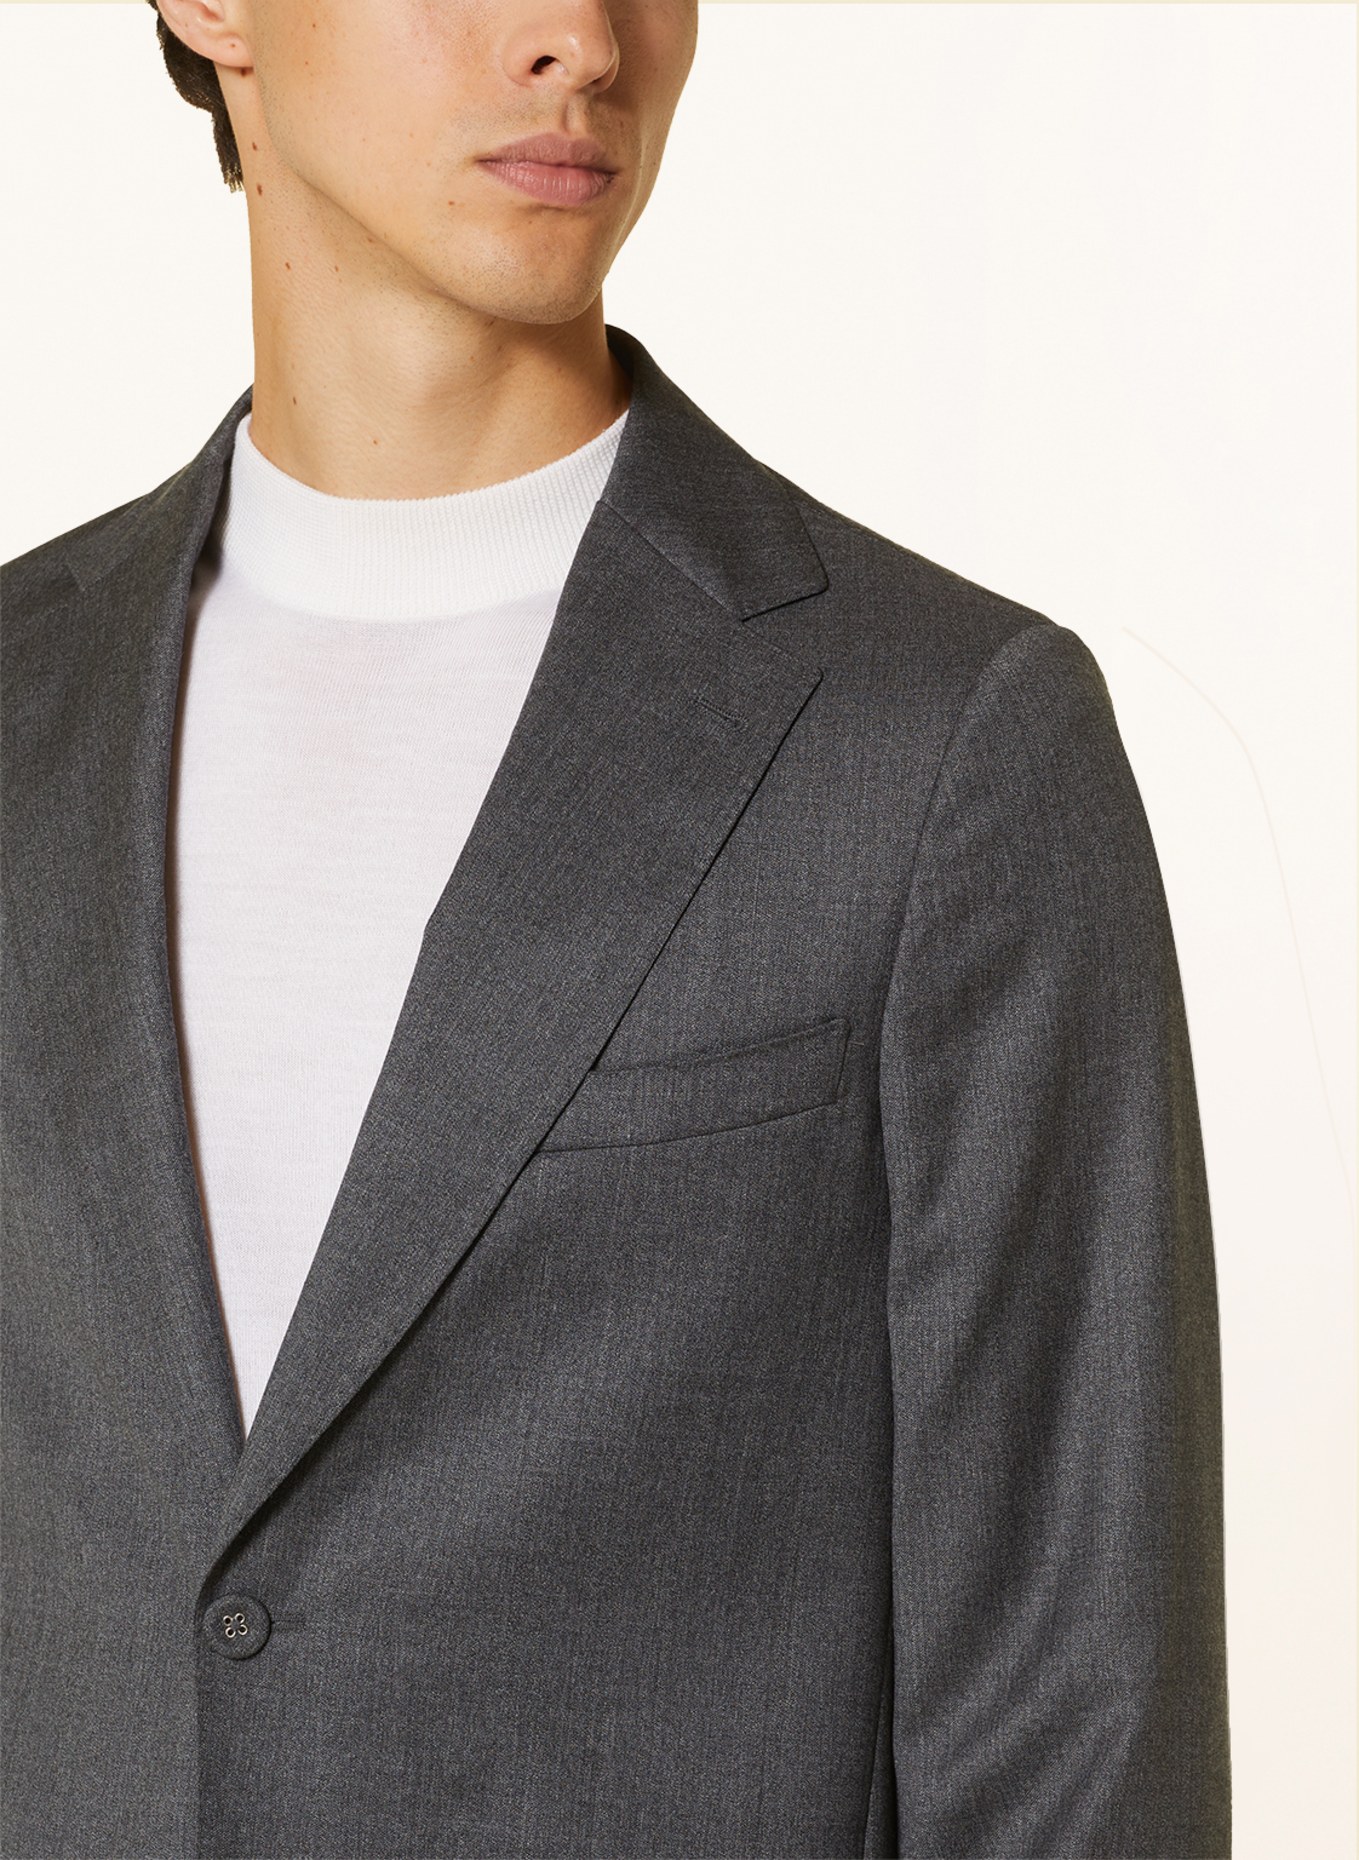 Officine Générale Suit jacket ARTHUS regular fit, Color: MIDGREY (Image 5)